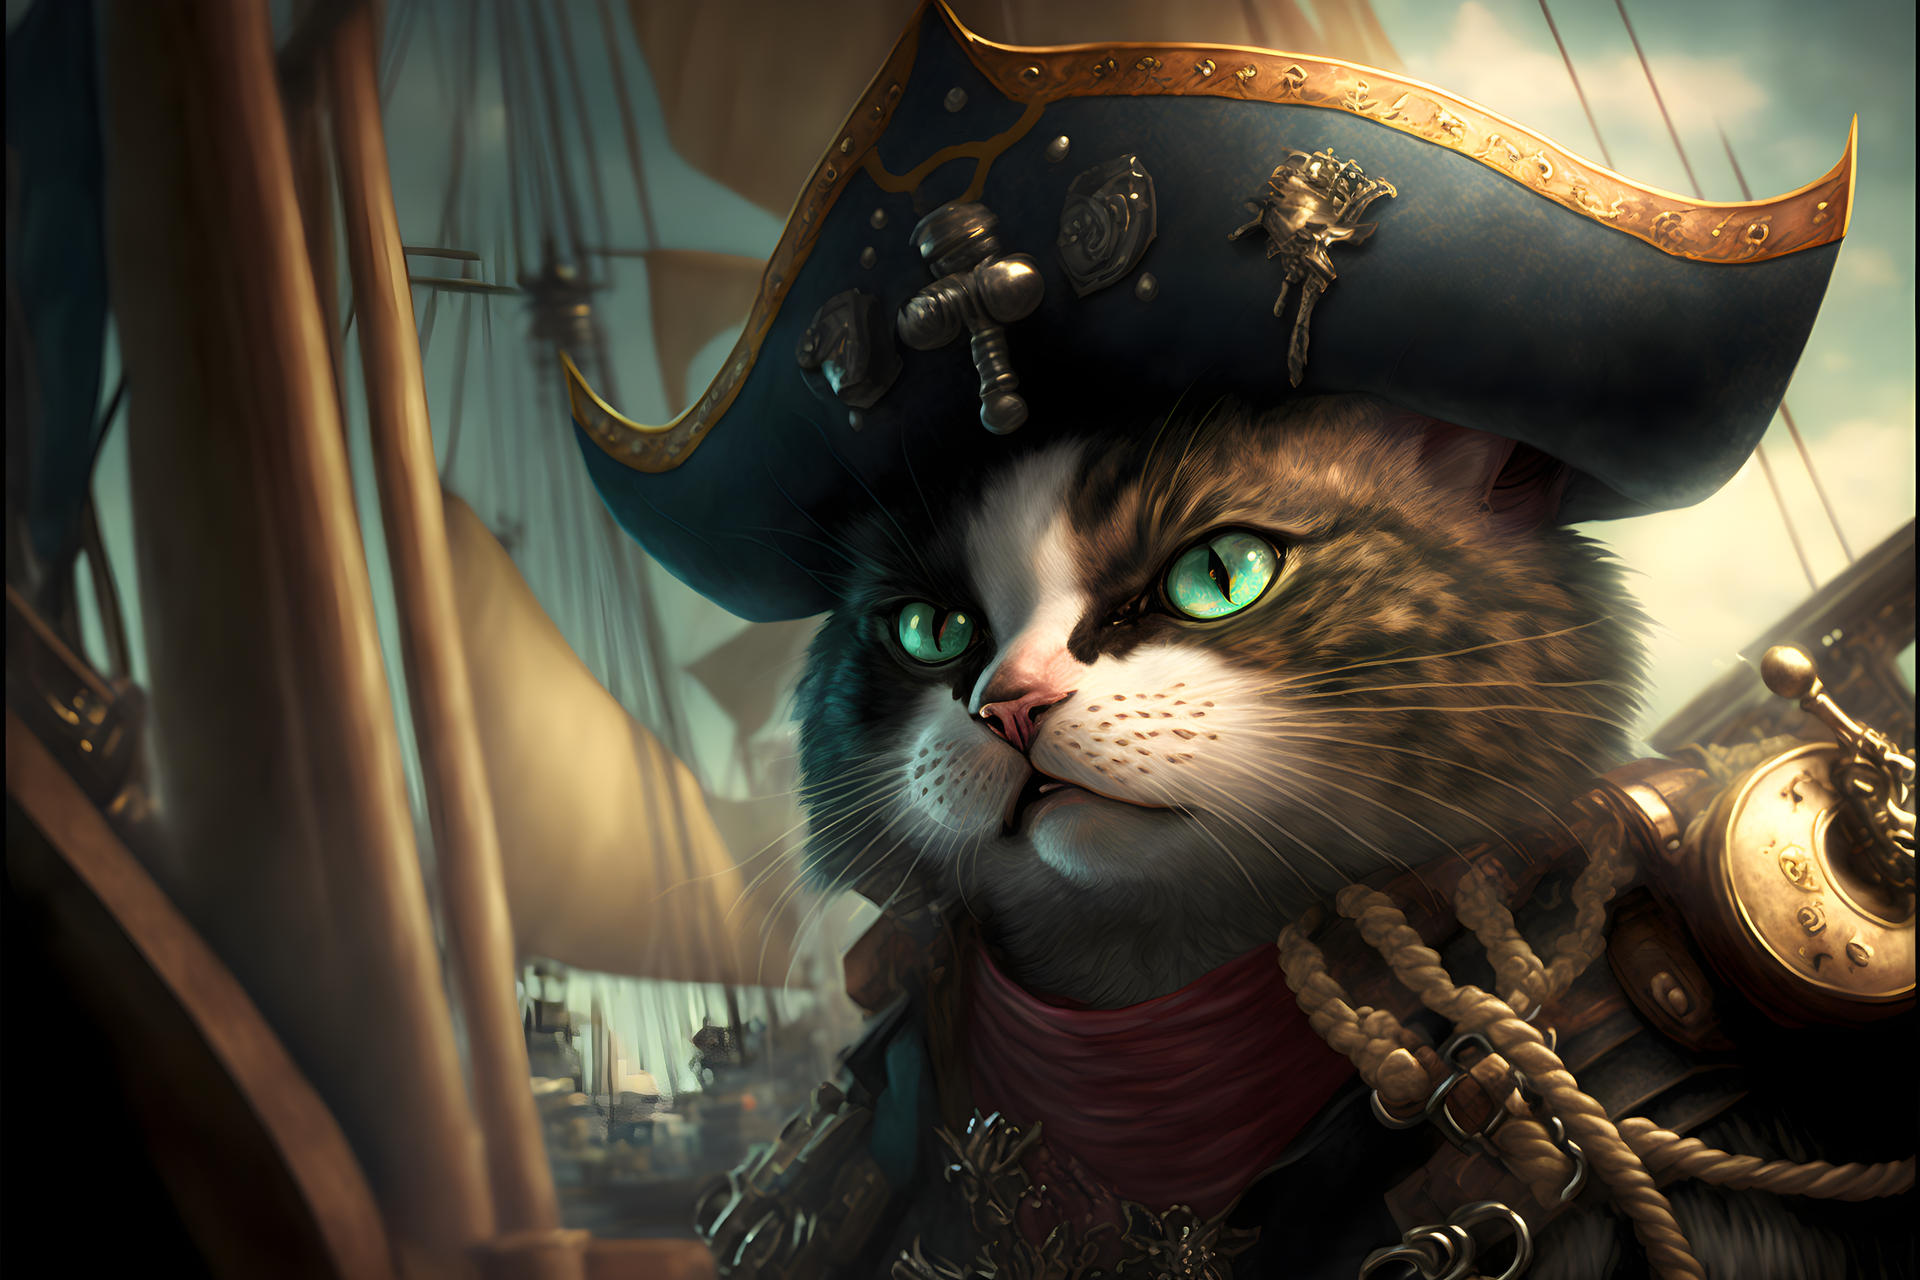 Pirate Cat by NostalgicSUPERFAN on DeviantArt